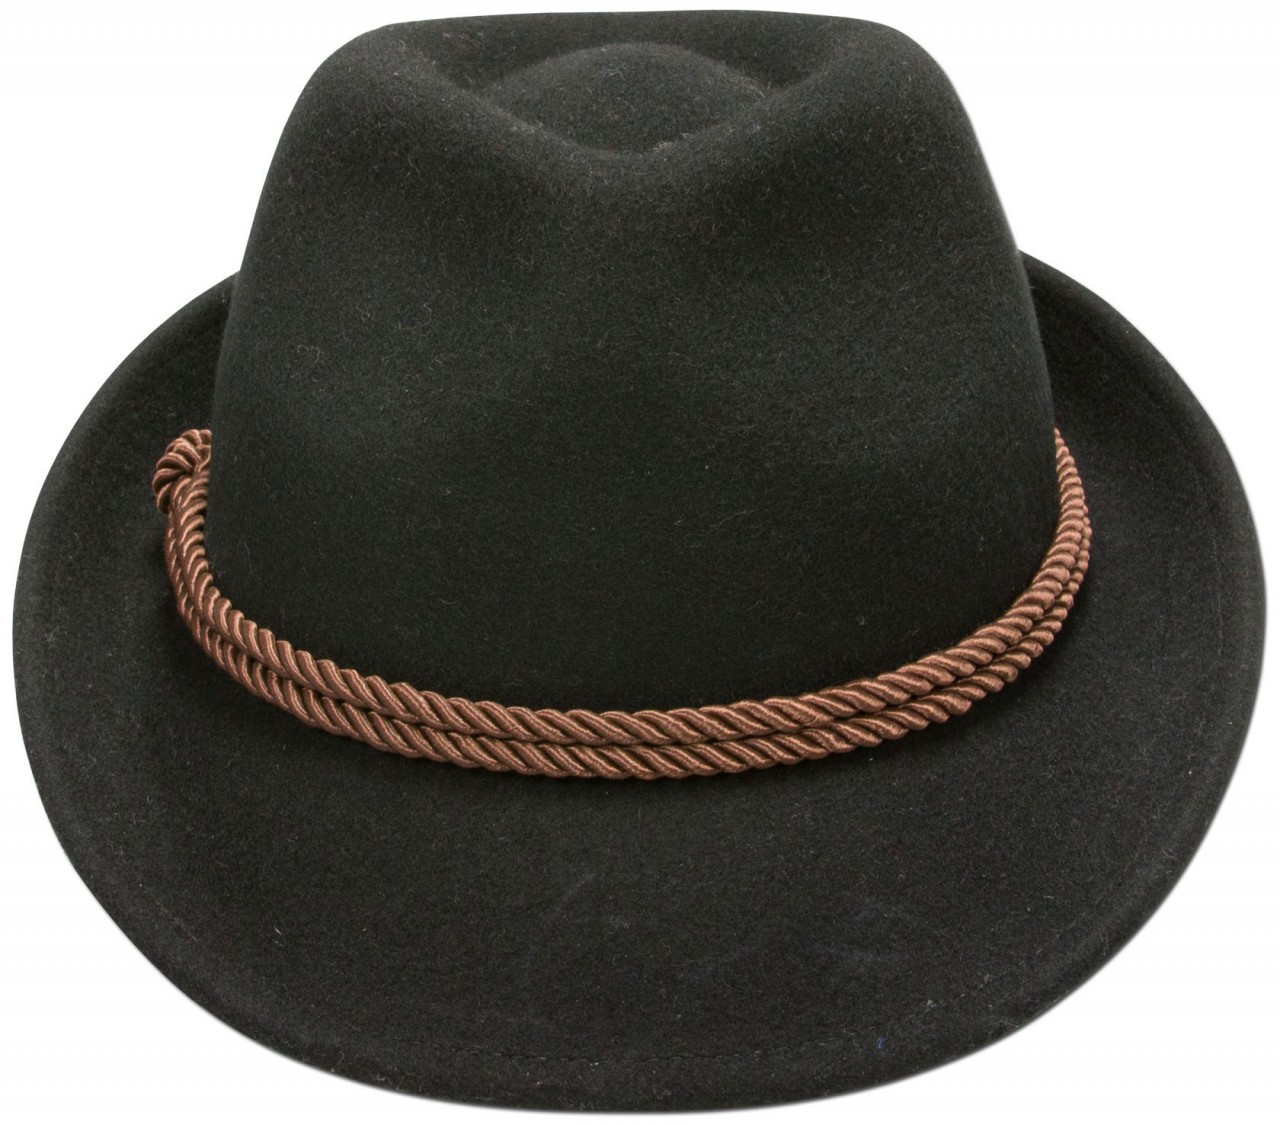 Vorschau: Felt Hat with Tyrolean Braid, Black